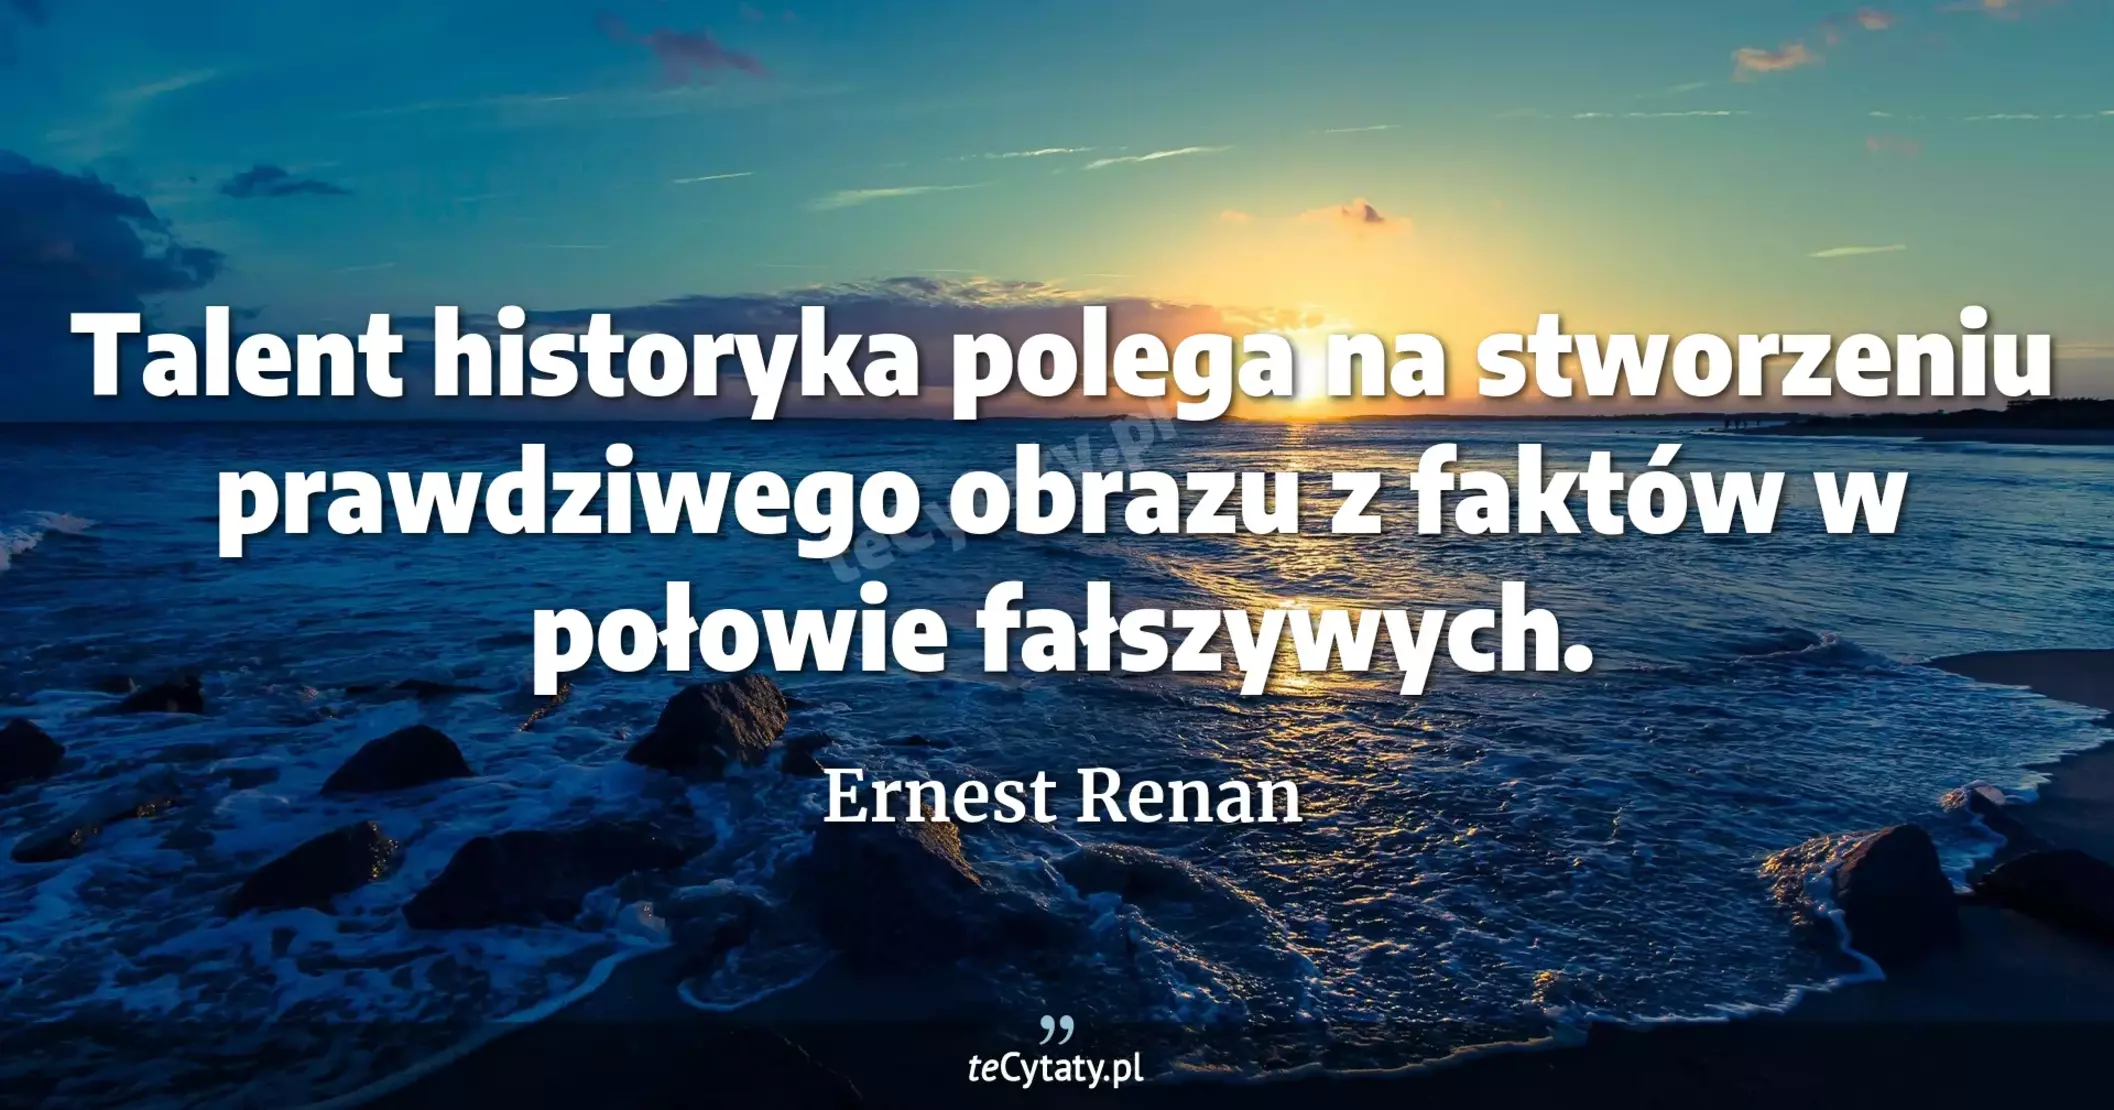 Talent historyka polega na stworzeniu prawdziwego obrazu z faktów w połowie fałszywych. - Ernest Renan